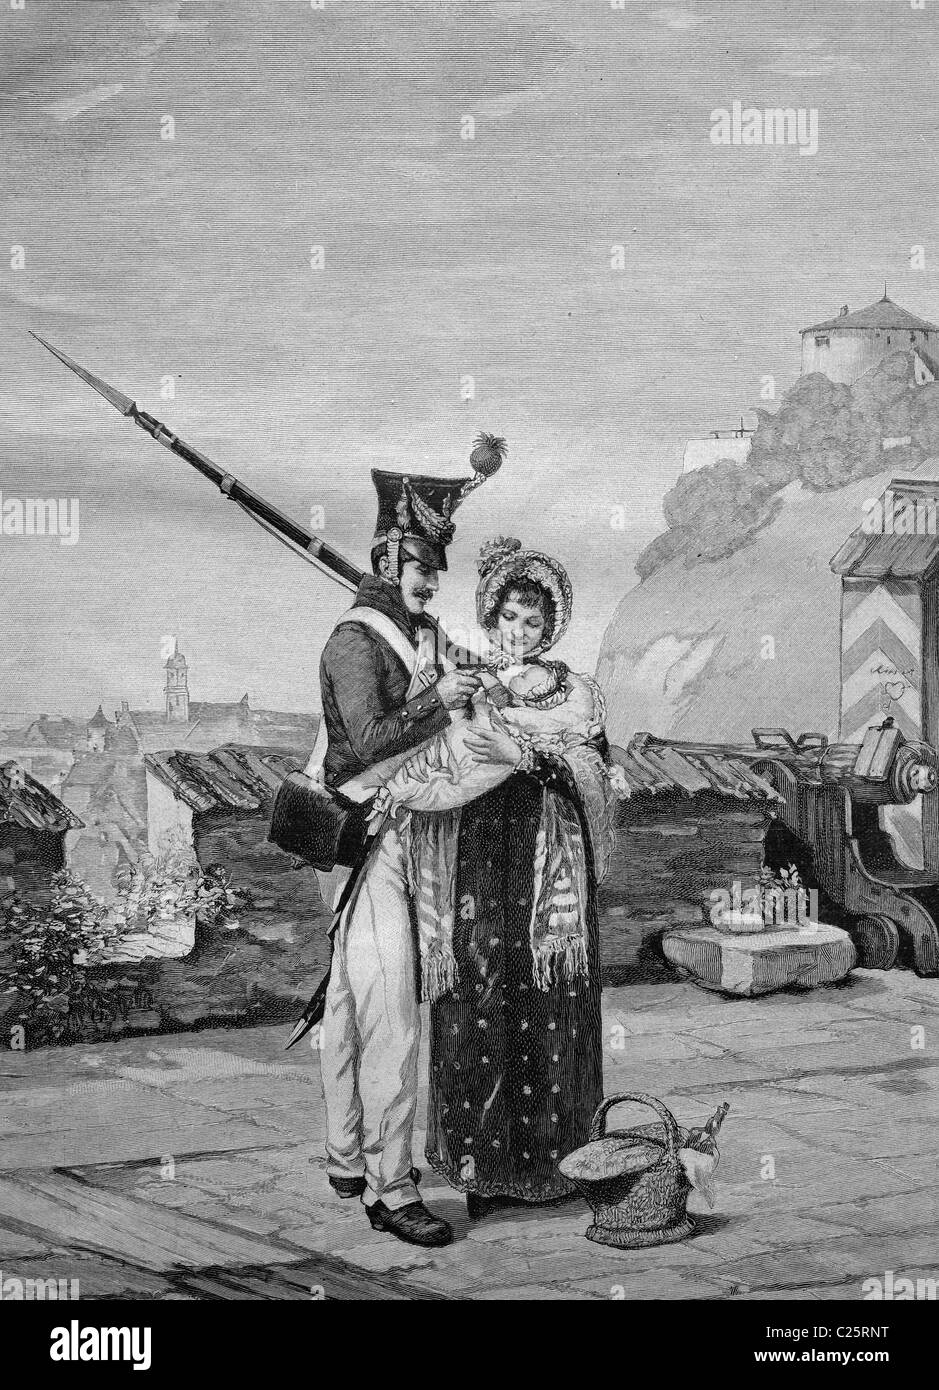 Membre du comité de vigilance sur le congé d'accueil avec sa femme et son enfant, illustration historique vers 1893 Banque D'Images